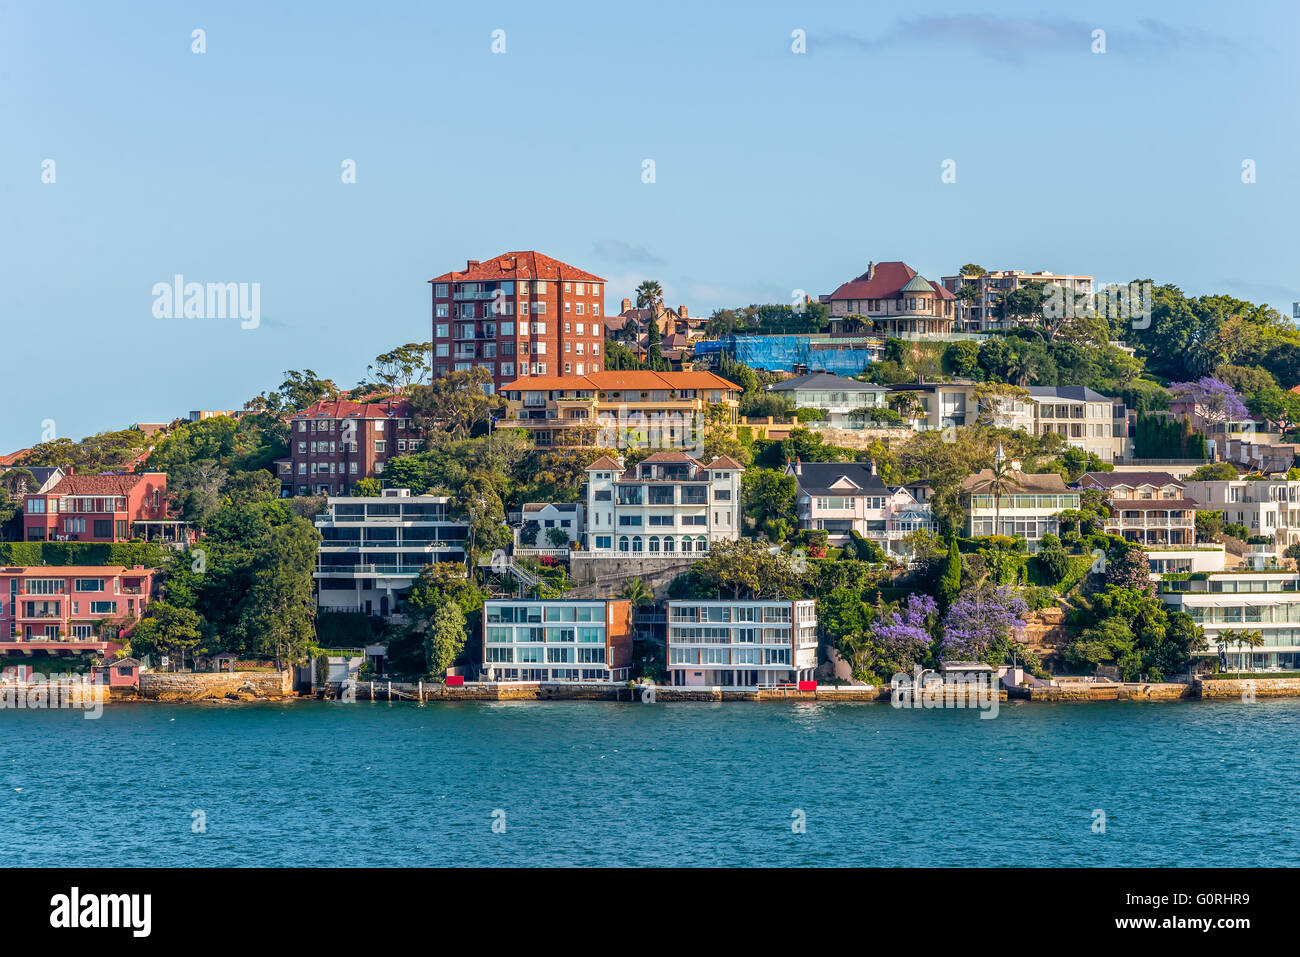 Die wohlhabenden Vorort von Point Piper Sydney Hafen-Seite gesehen von Sydney Harbour, Sydney, New South Wales, Australien Stockfoto